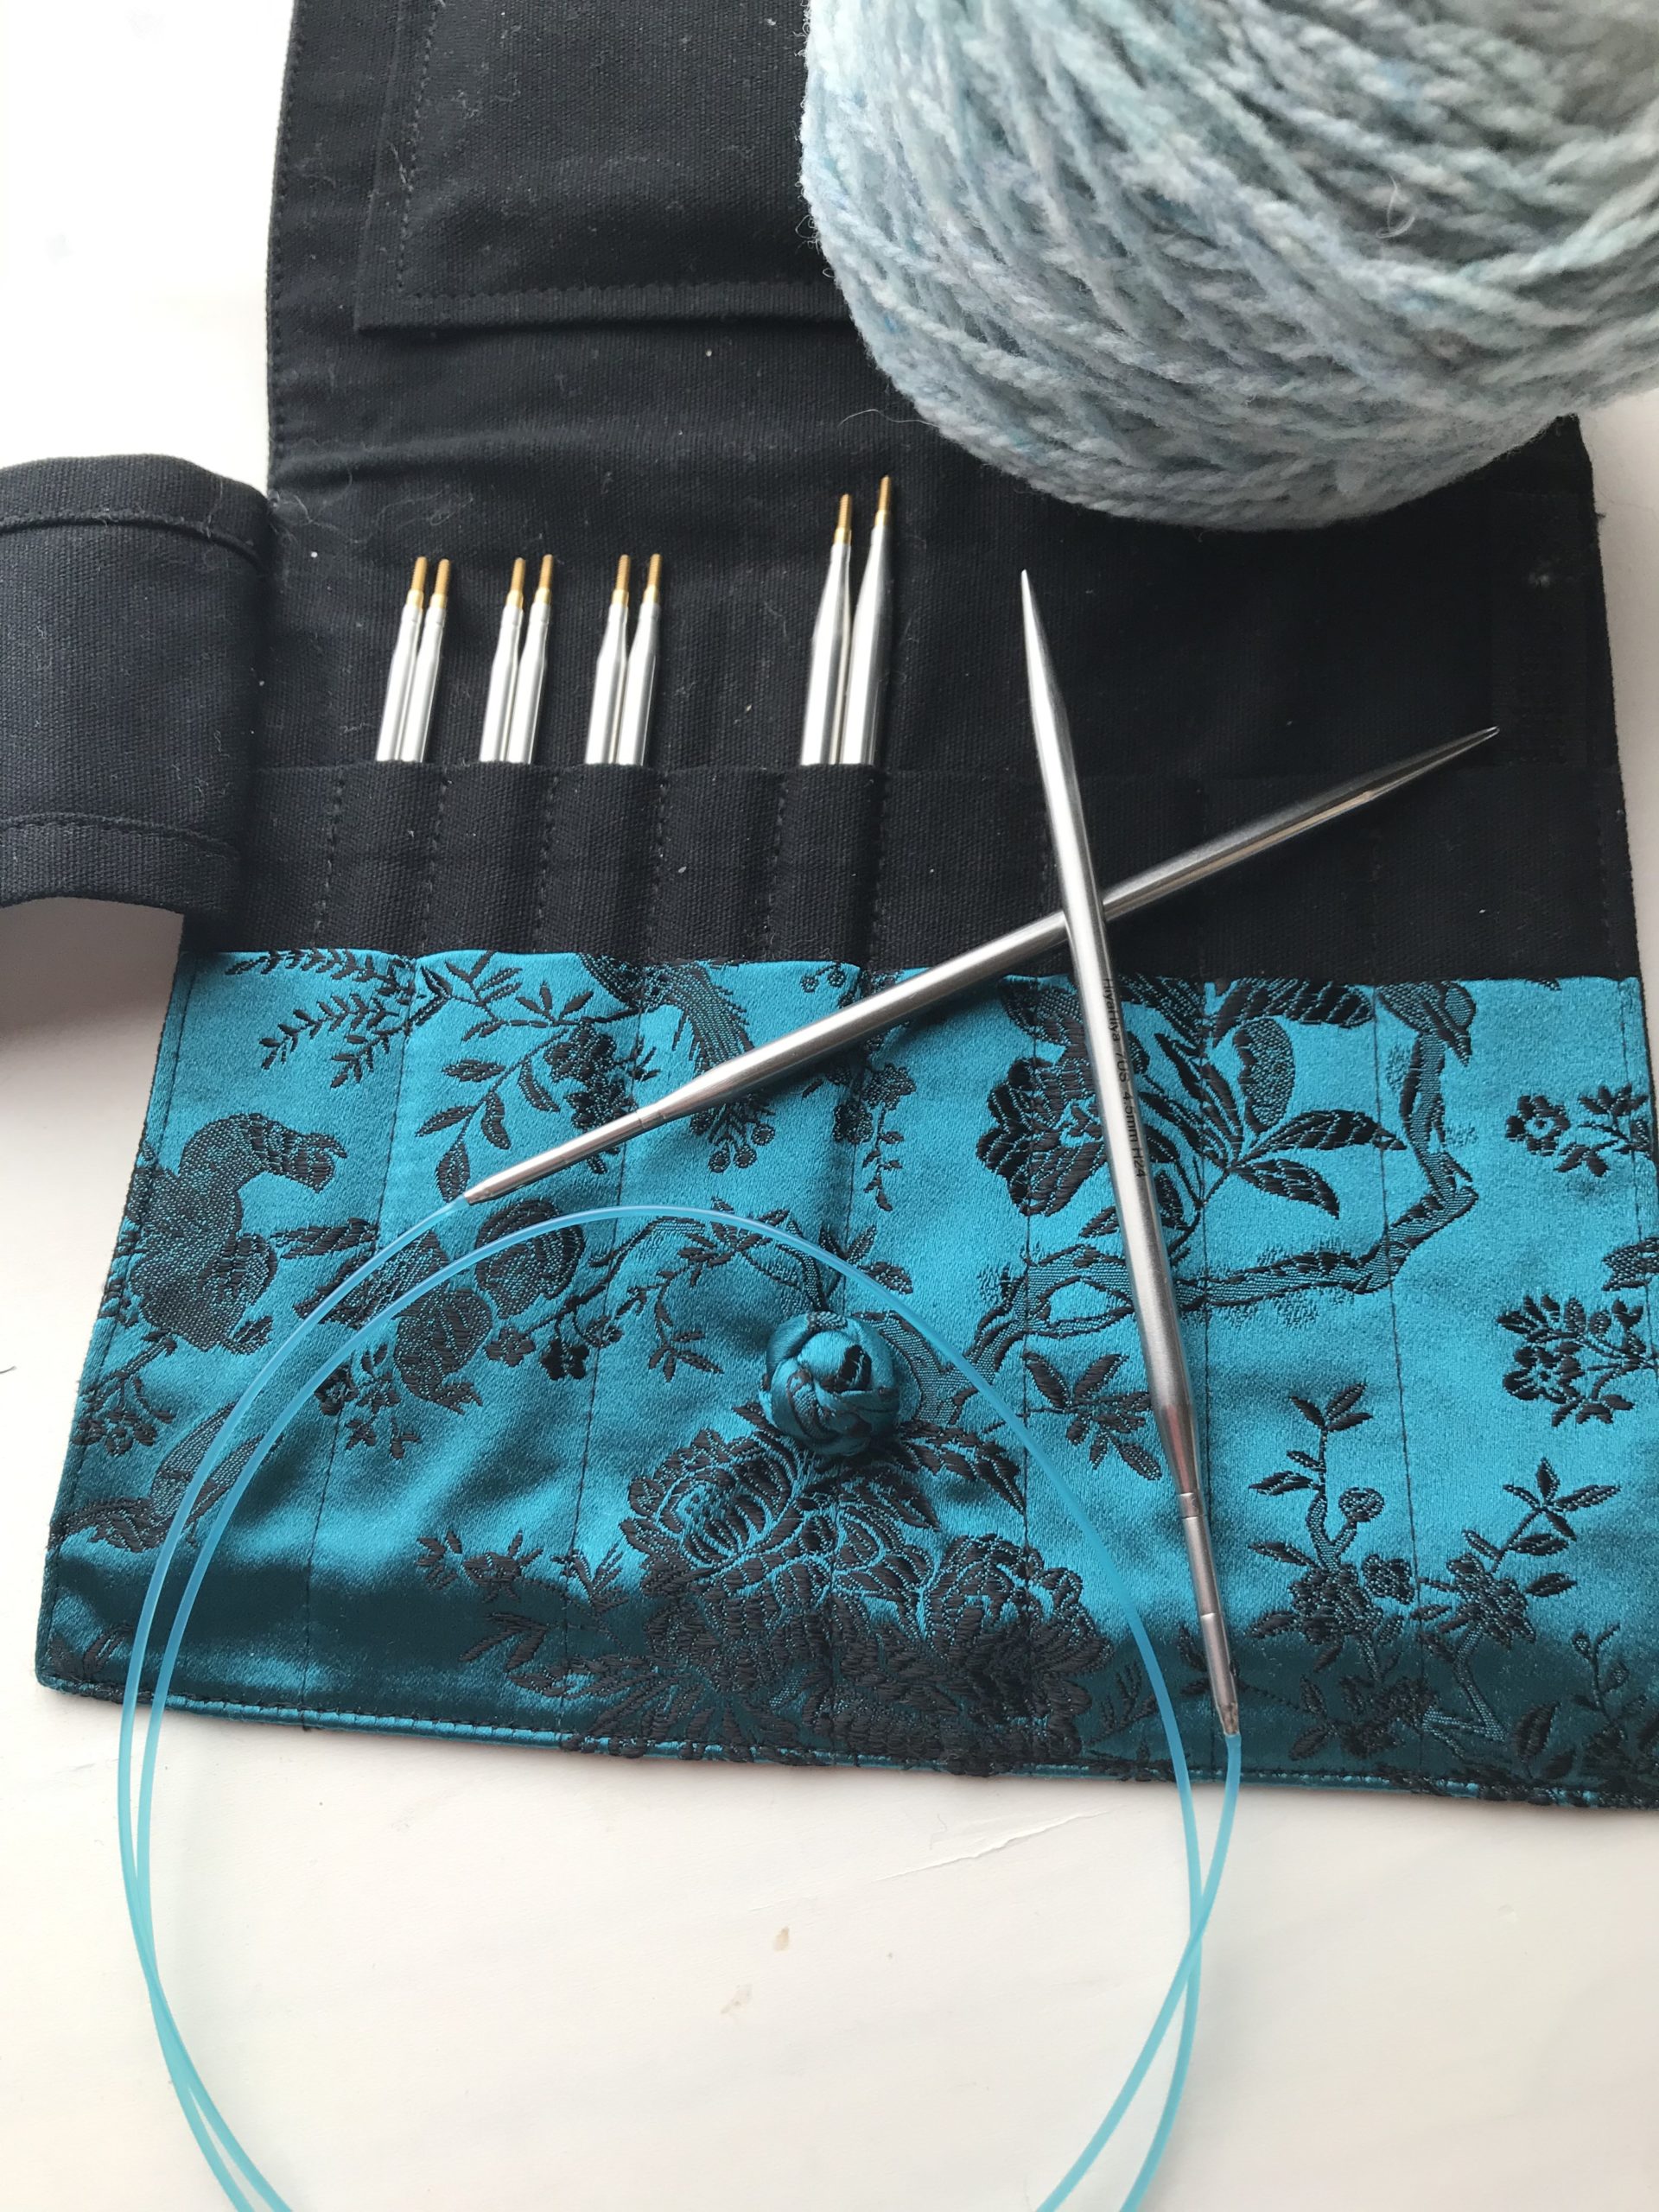 輪針のススメ | 編み物で世界を広げよう